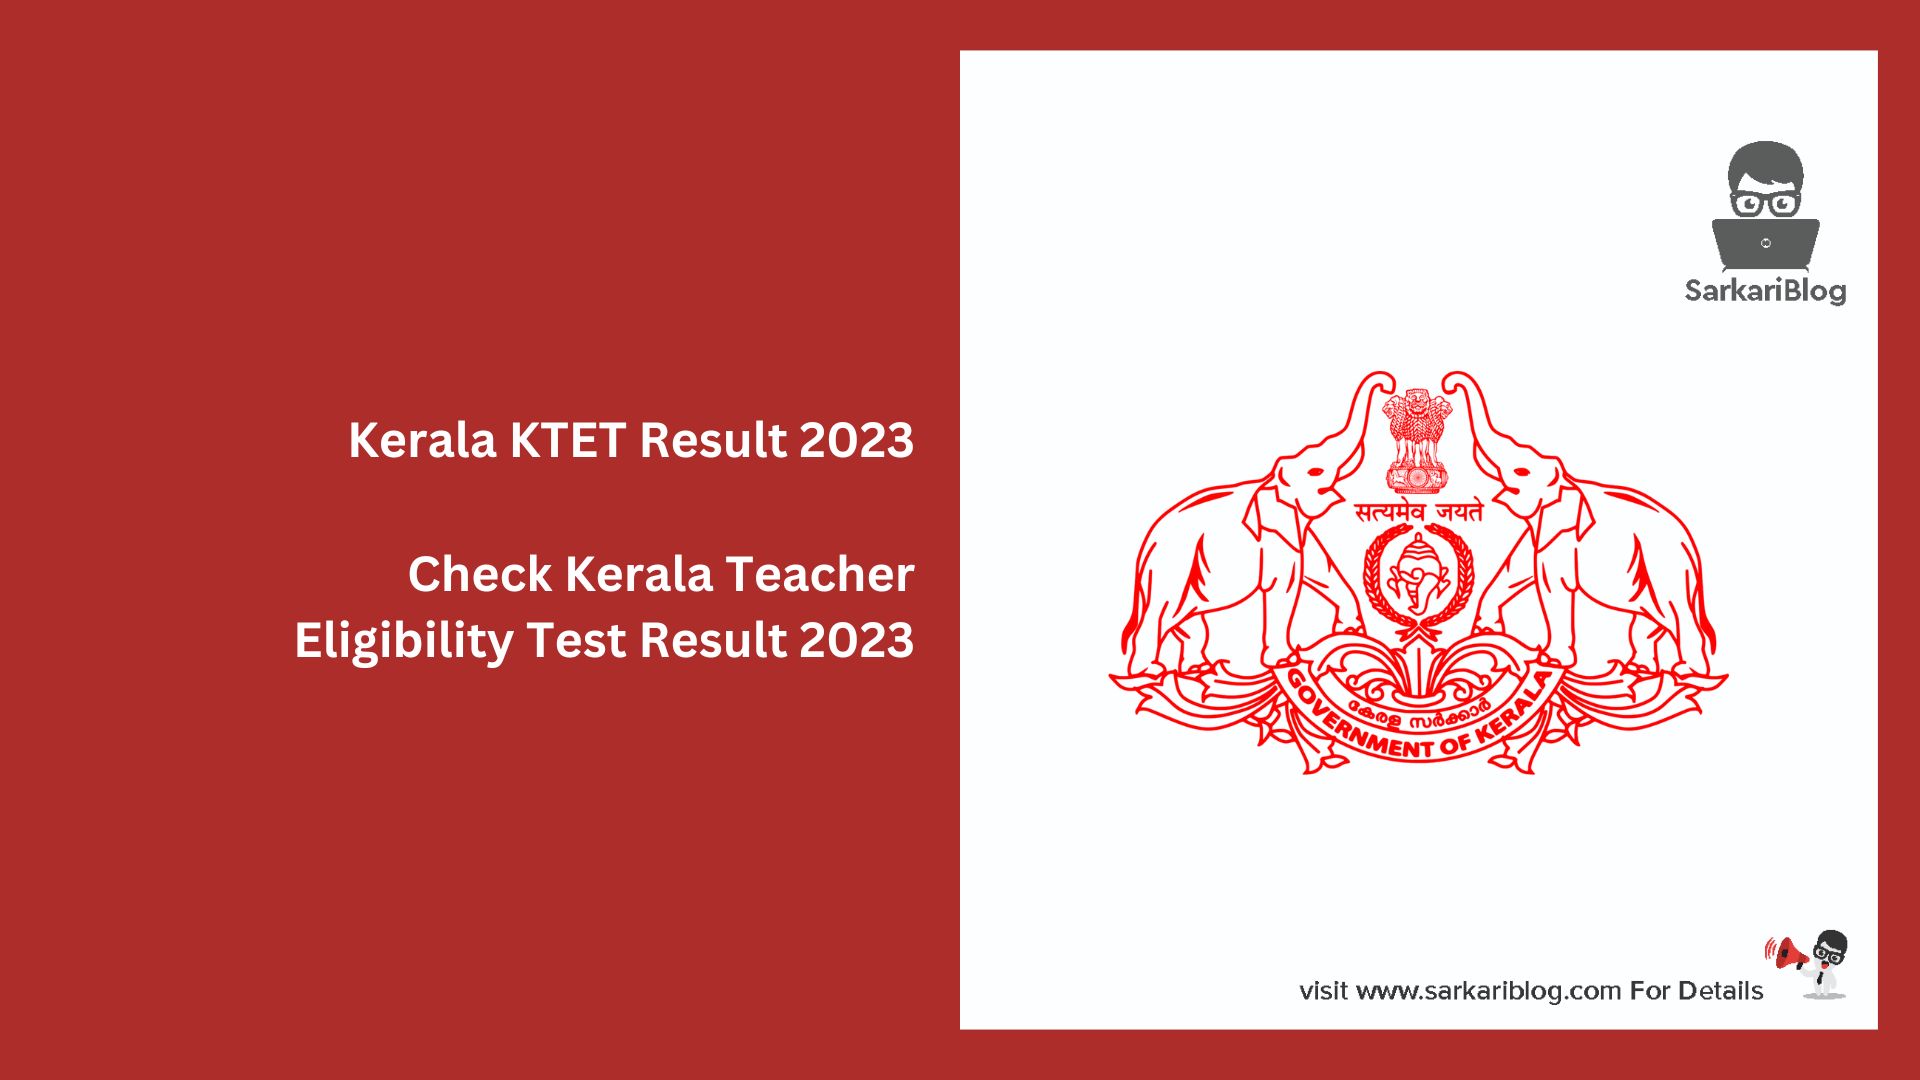 Kerala KTET Result 2023